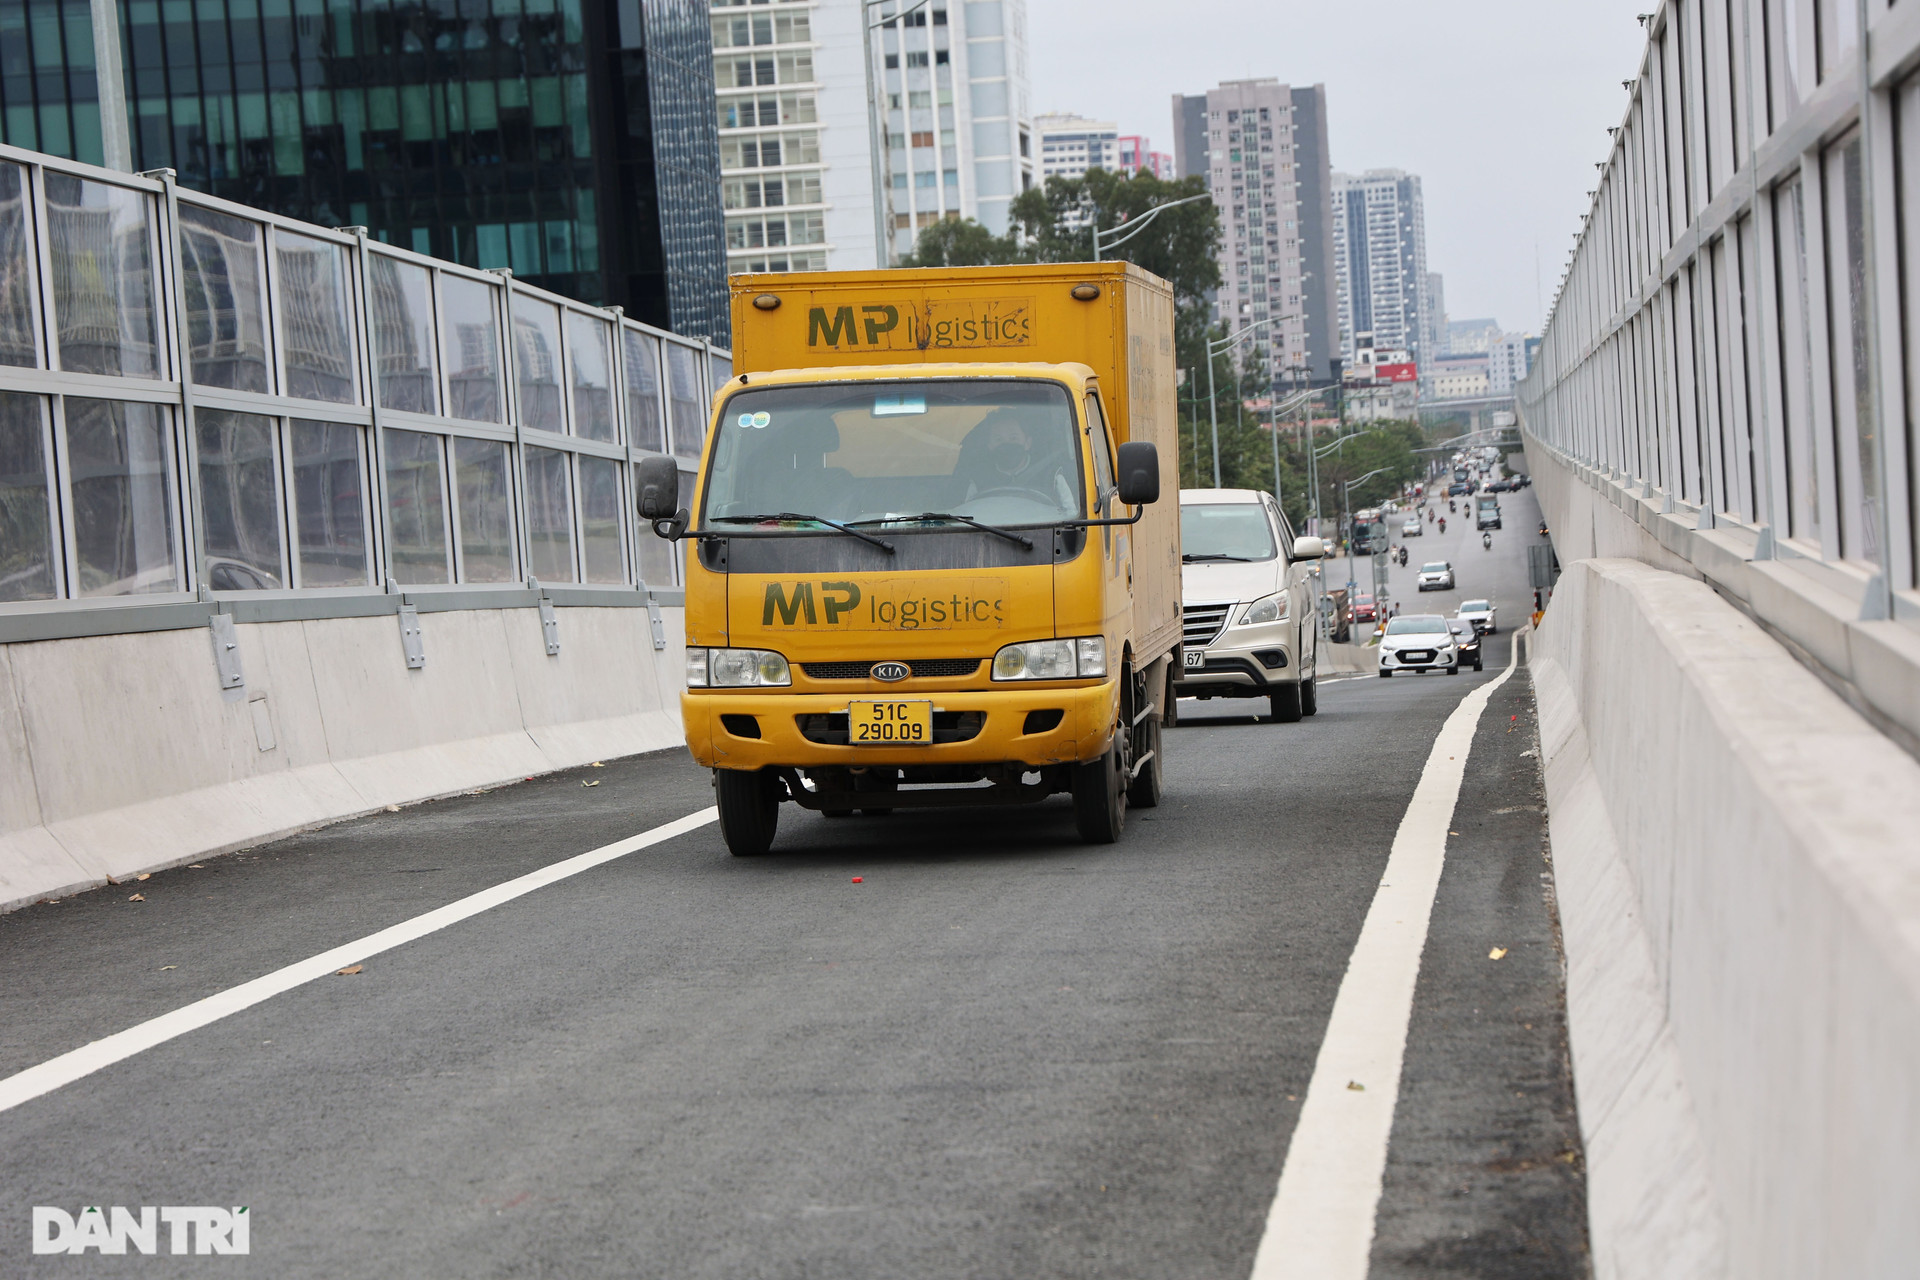 Chính thức thông xe hệ thống đường dẫn lên xuống cầu cạn dài nhất Hà Nội - 12